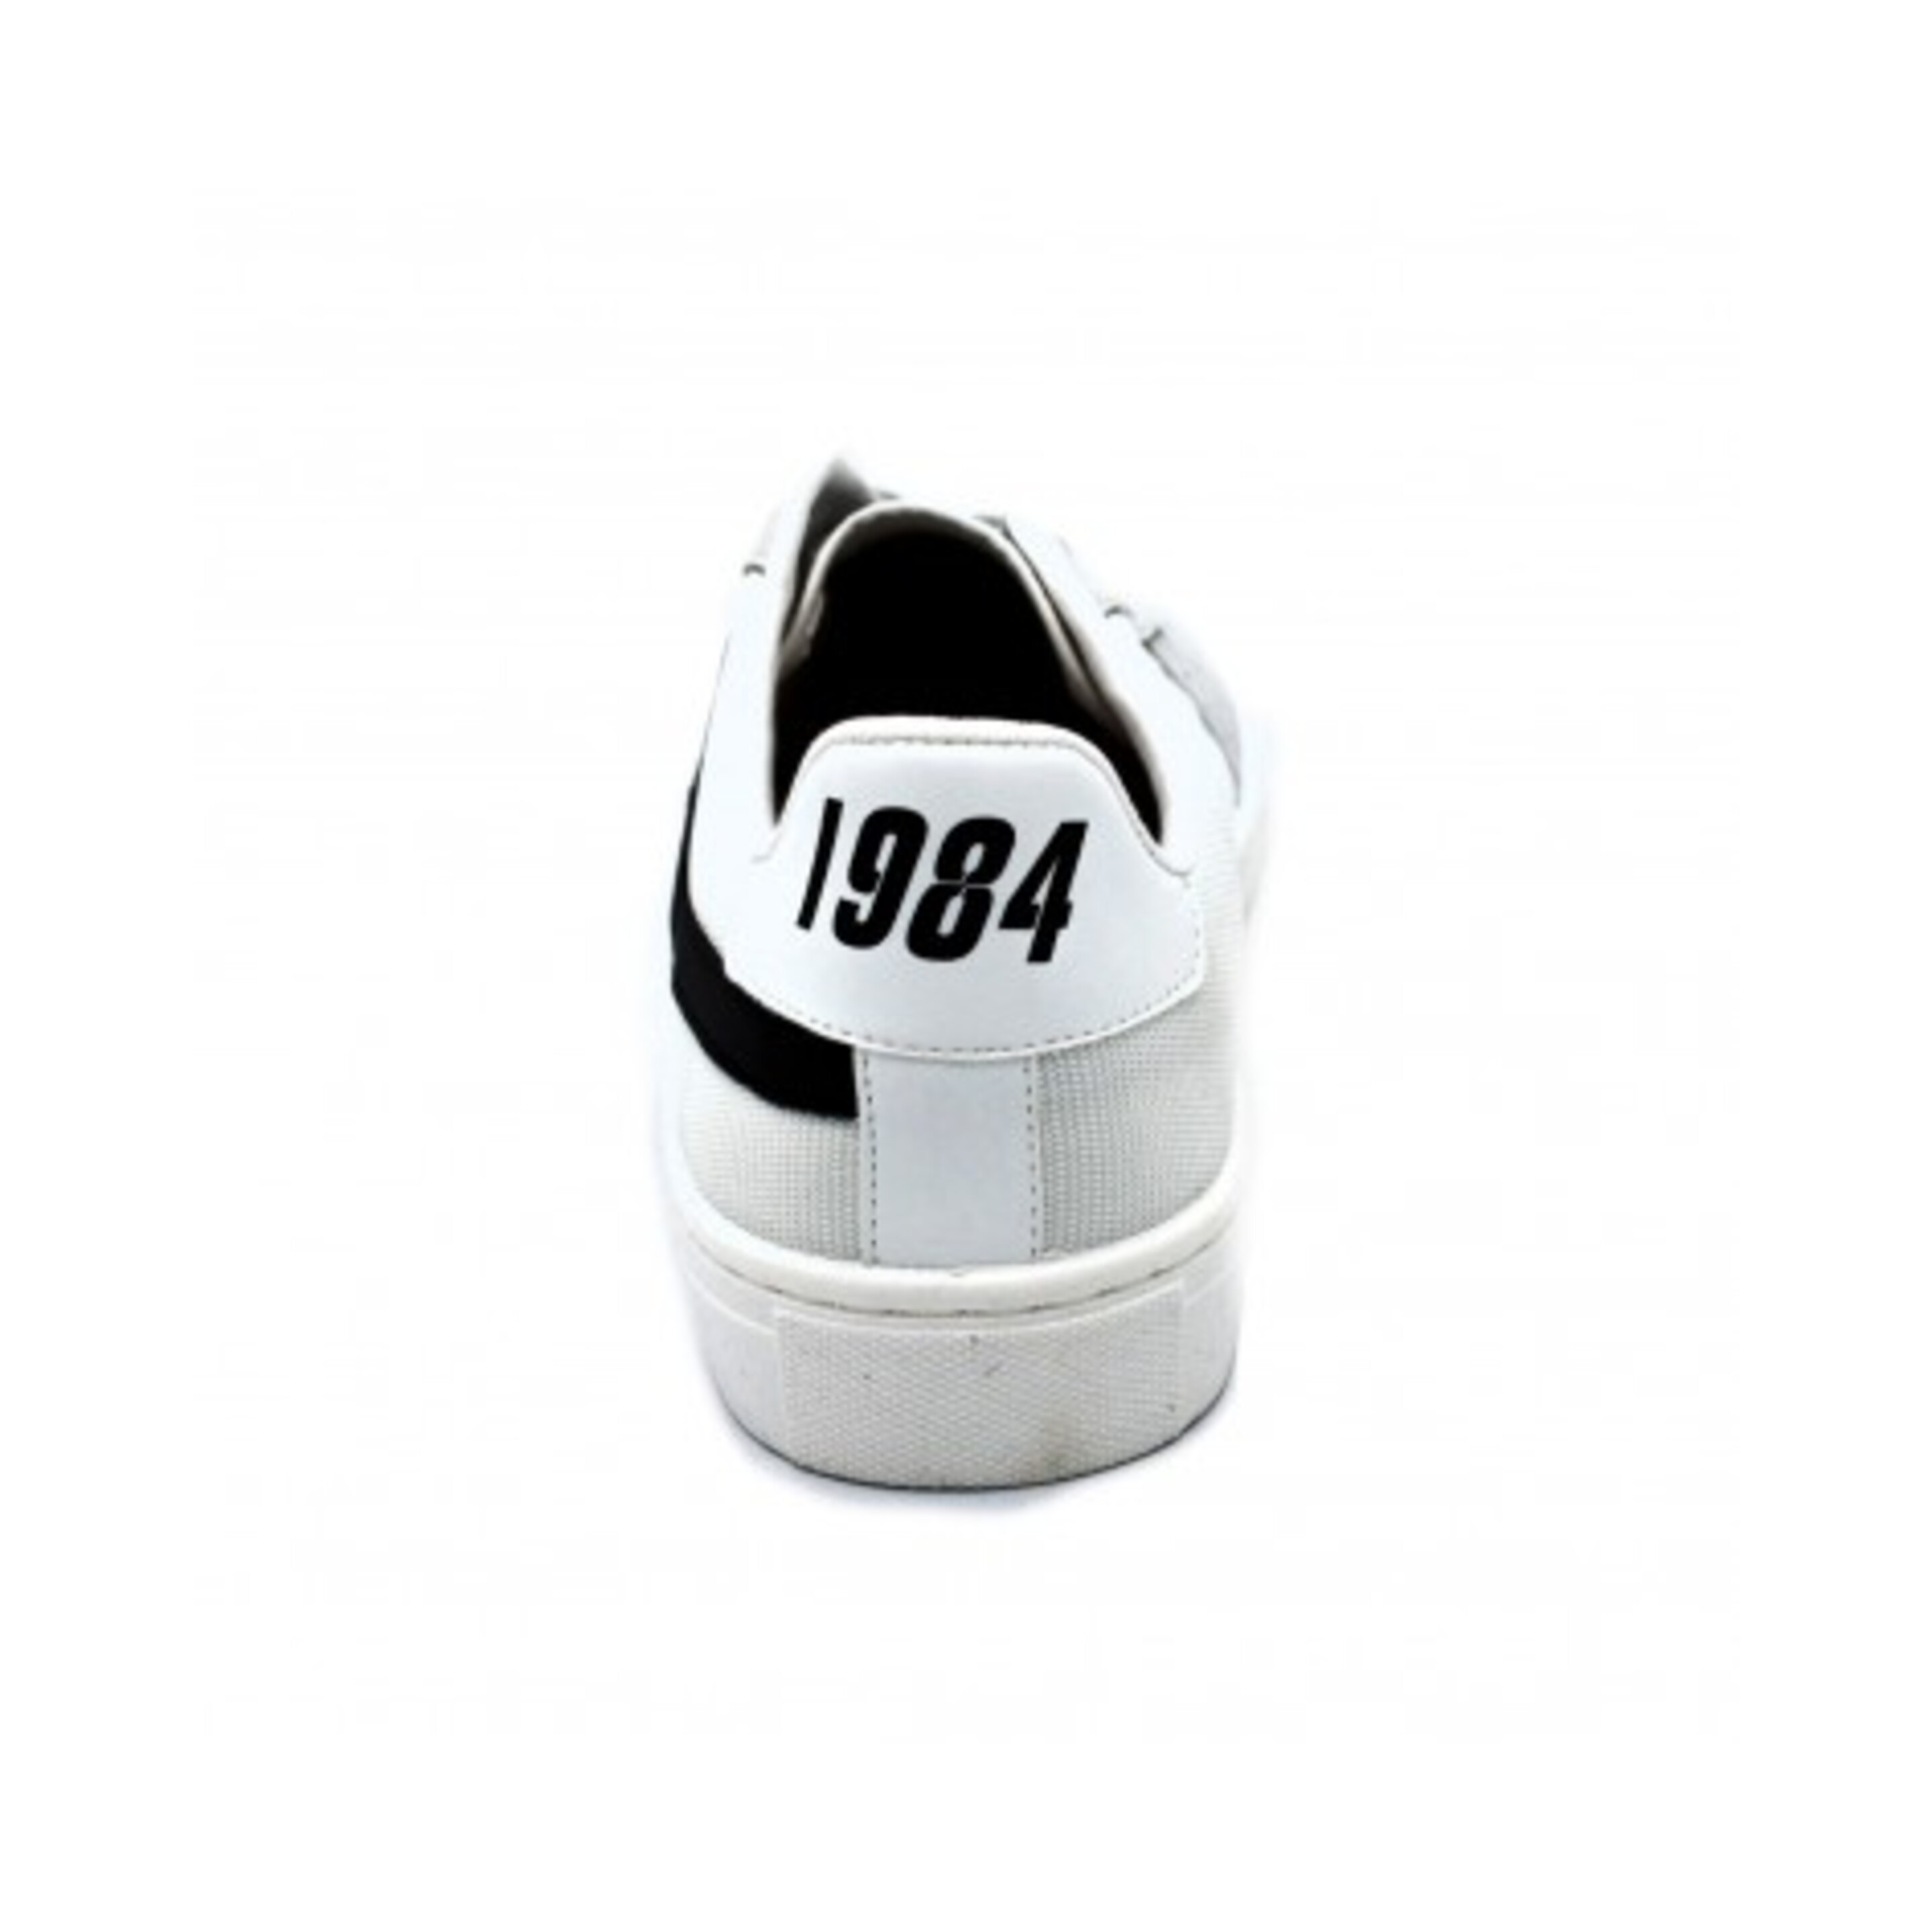 Sneaker Recykers 1984 - blanco/negro  MKP